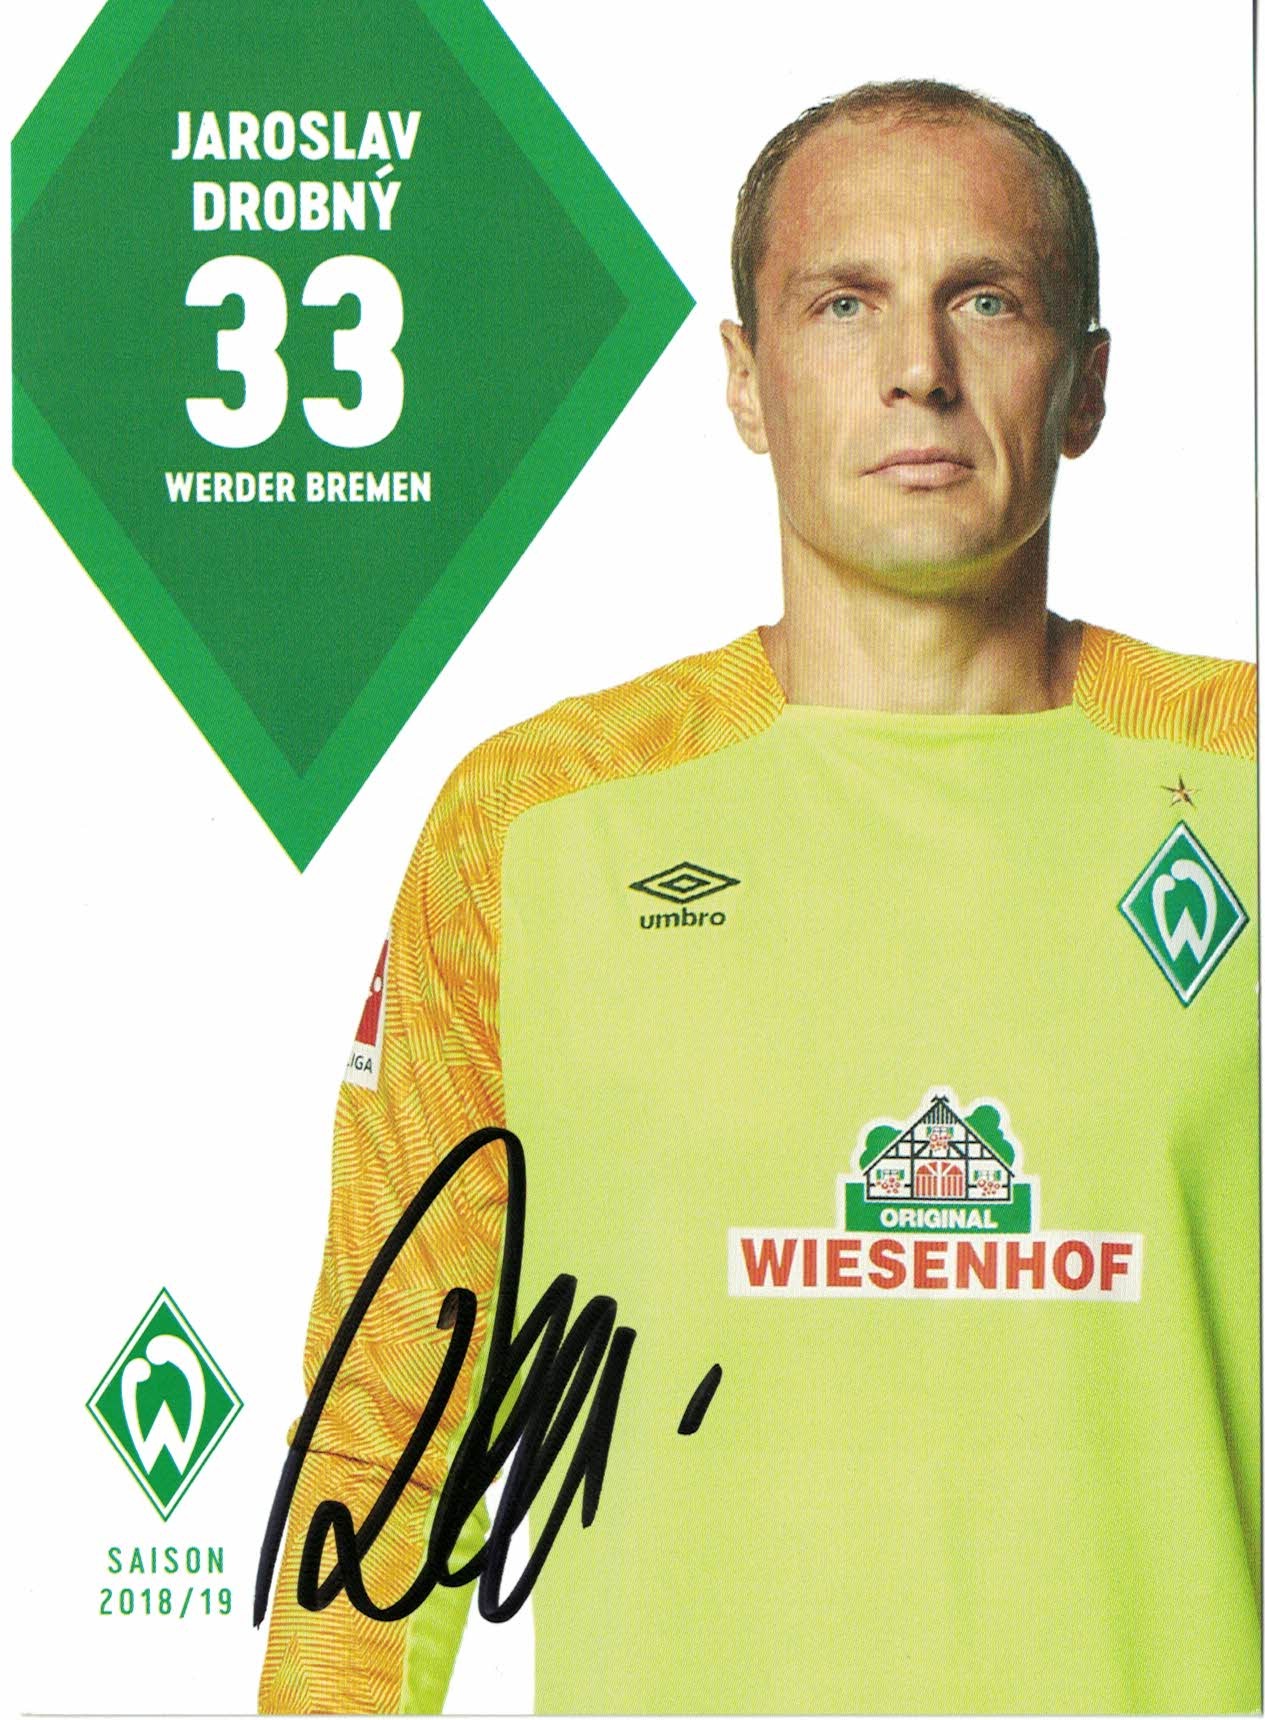 Jaroslav Drobny Werder Bremen 2018/19 Podpisova karta autogram